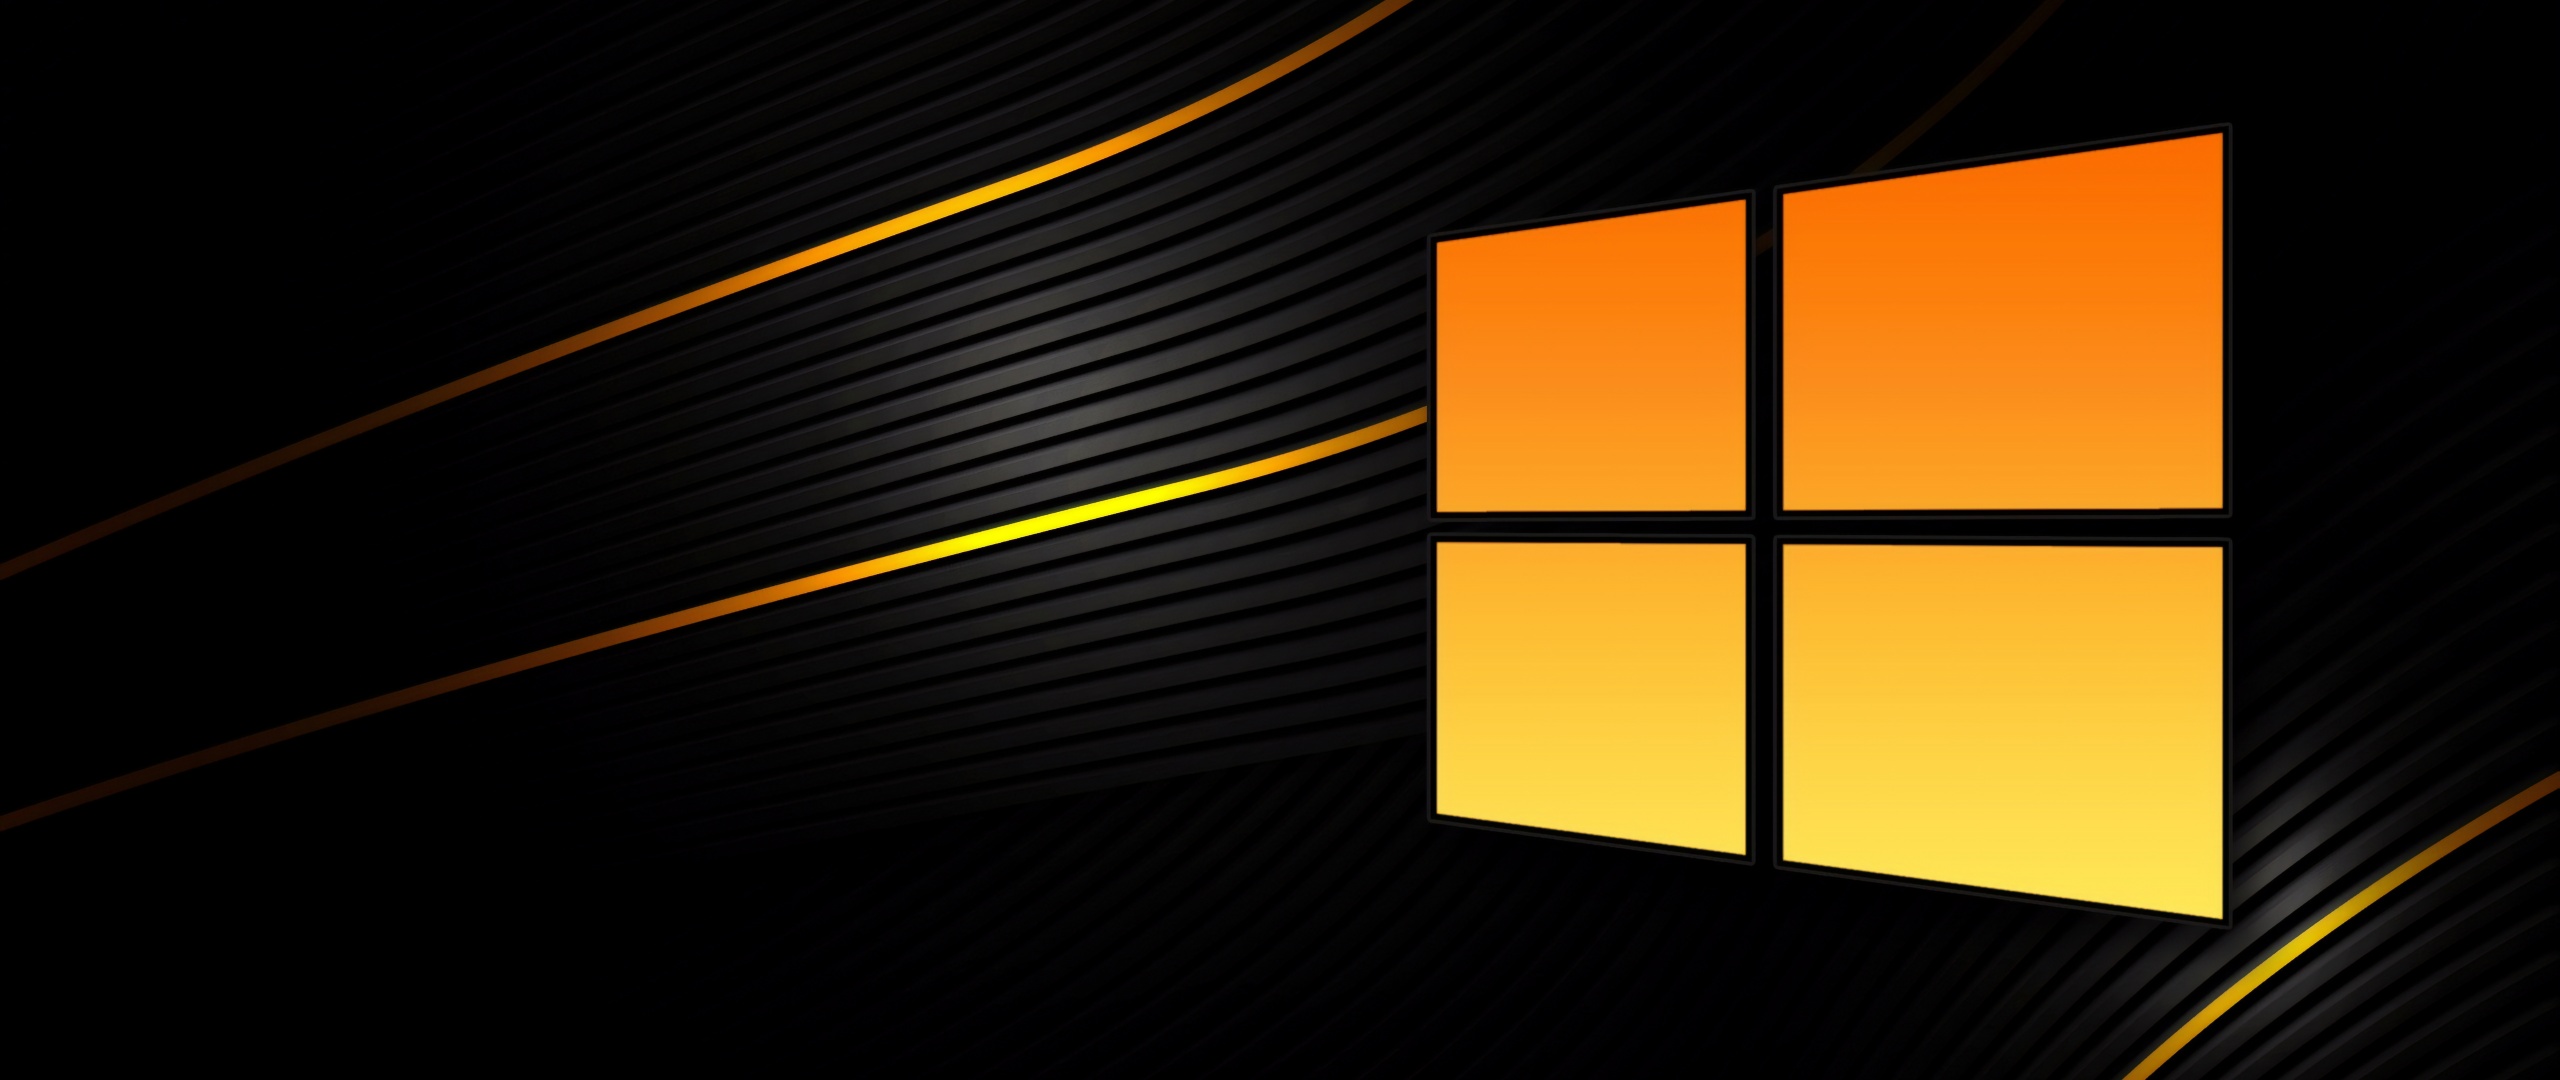 Hãy khám phá hình nền Windows 10 4K đầy công nghệ với màu đen u nguyên bí ẩn tại #